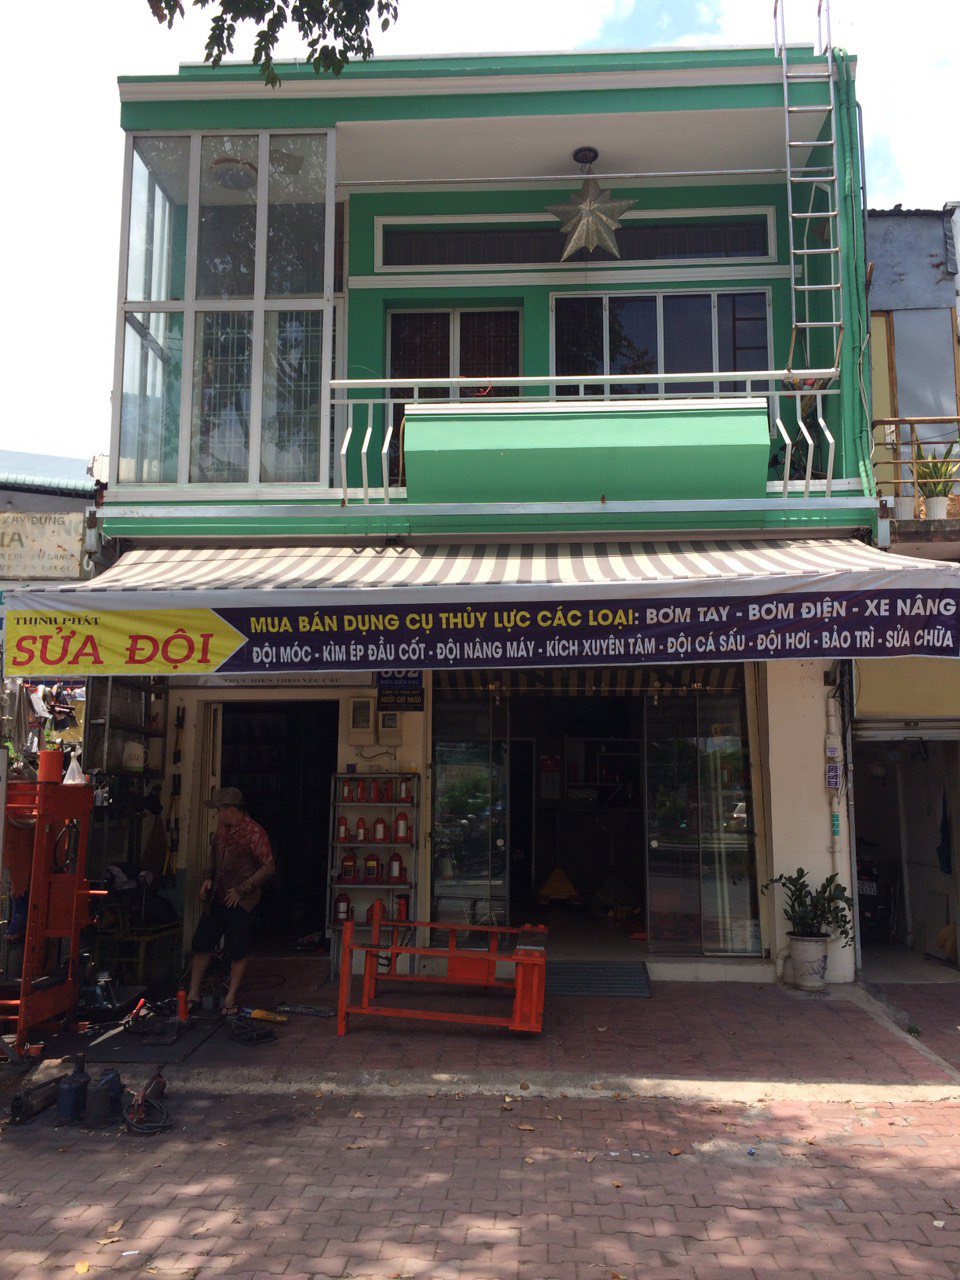 Bán nhà mặt tiền đường Điện Biên Phủ quận Bình Thạnh cách 